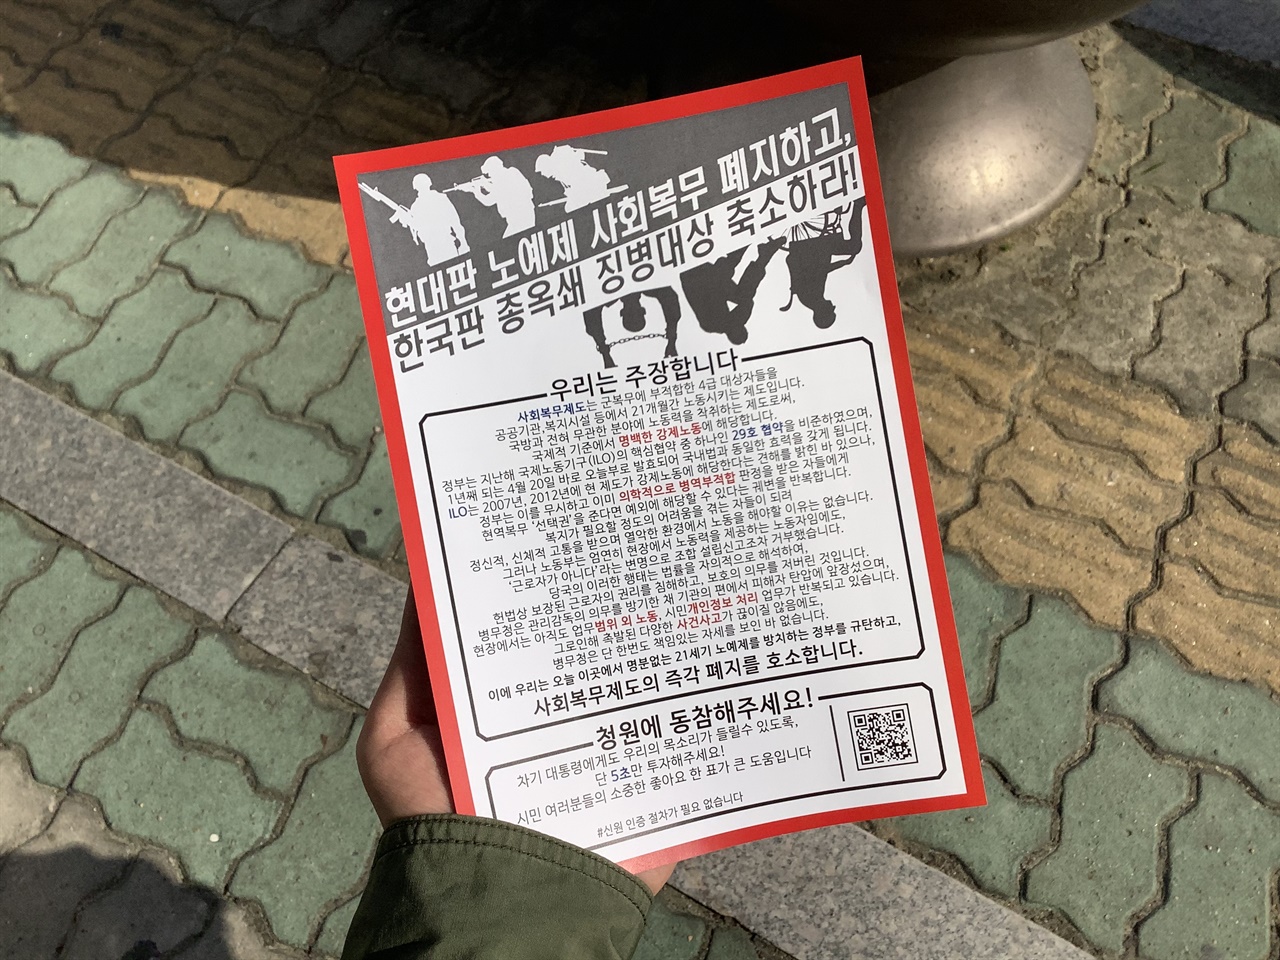 20일, 서울지방병무청 앞에서 진행된 사회복무요원들의 집회에서 주최 측이 배포한 유인물